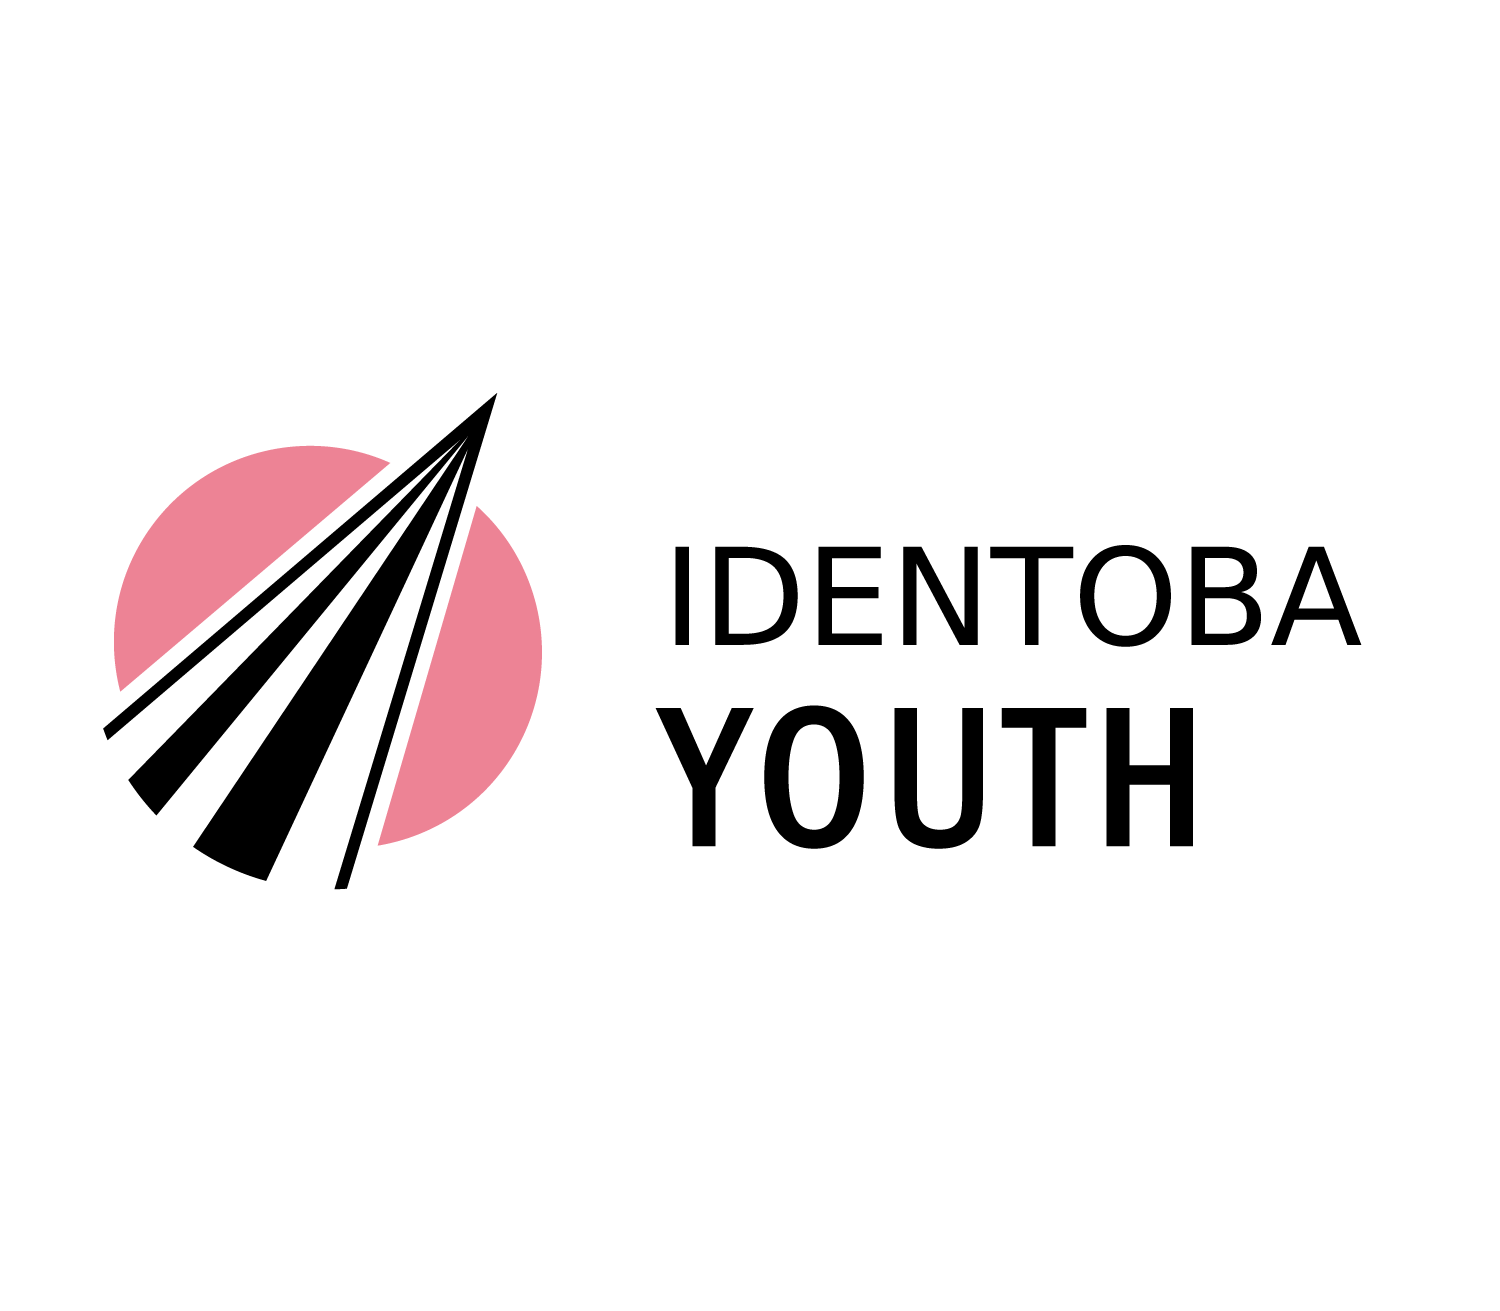 Identoba Youth